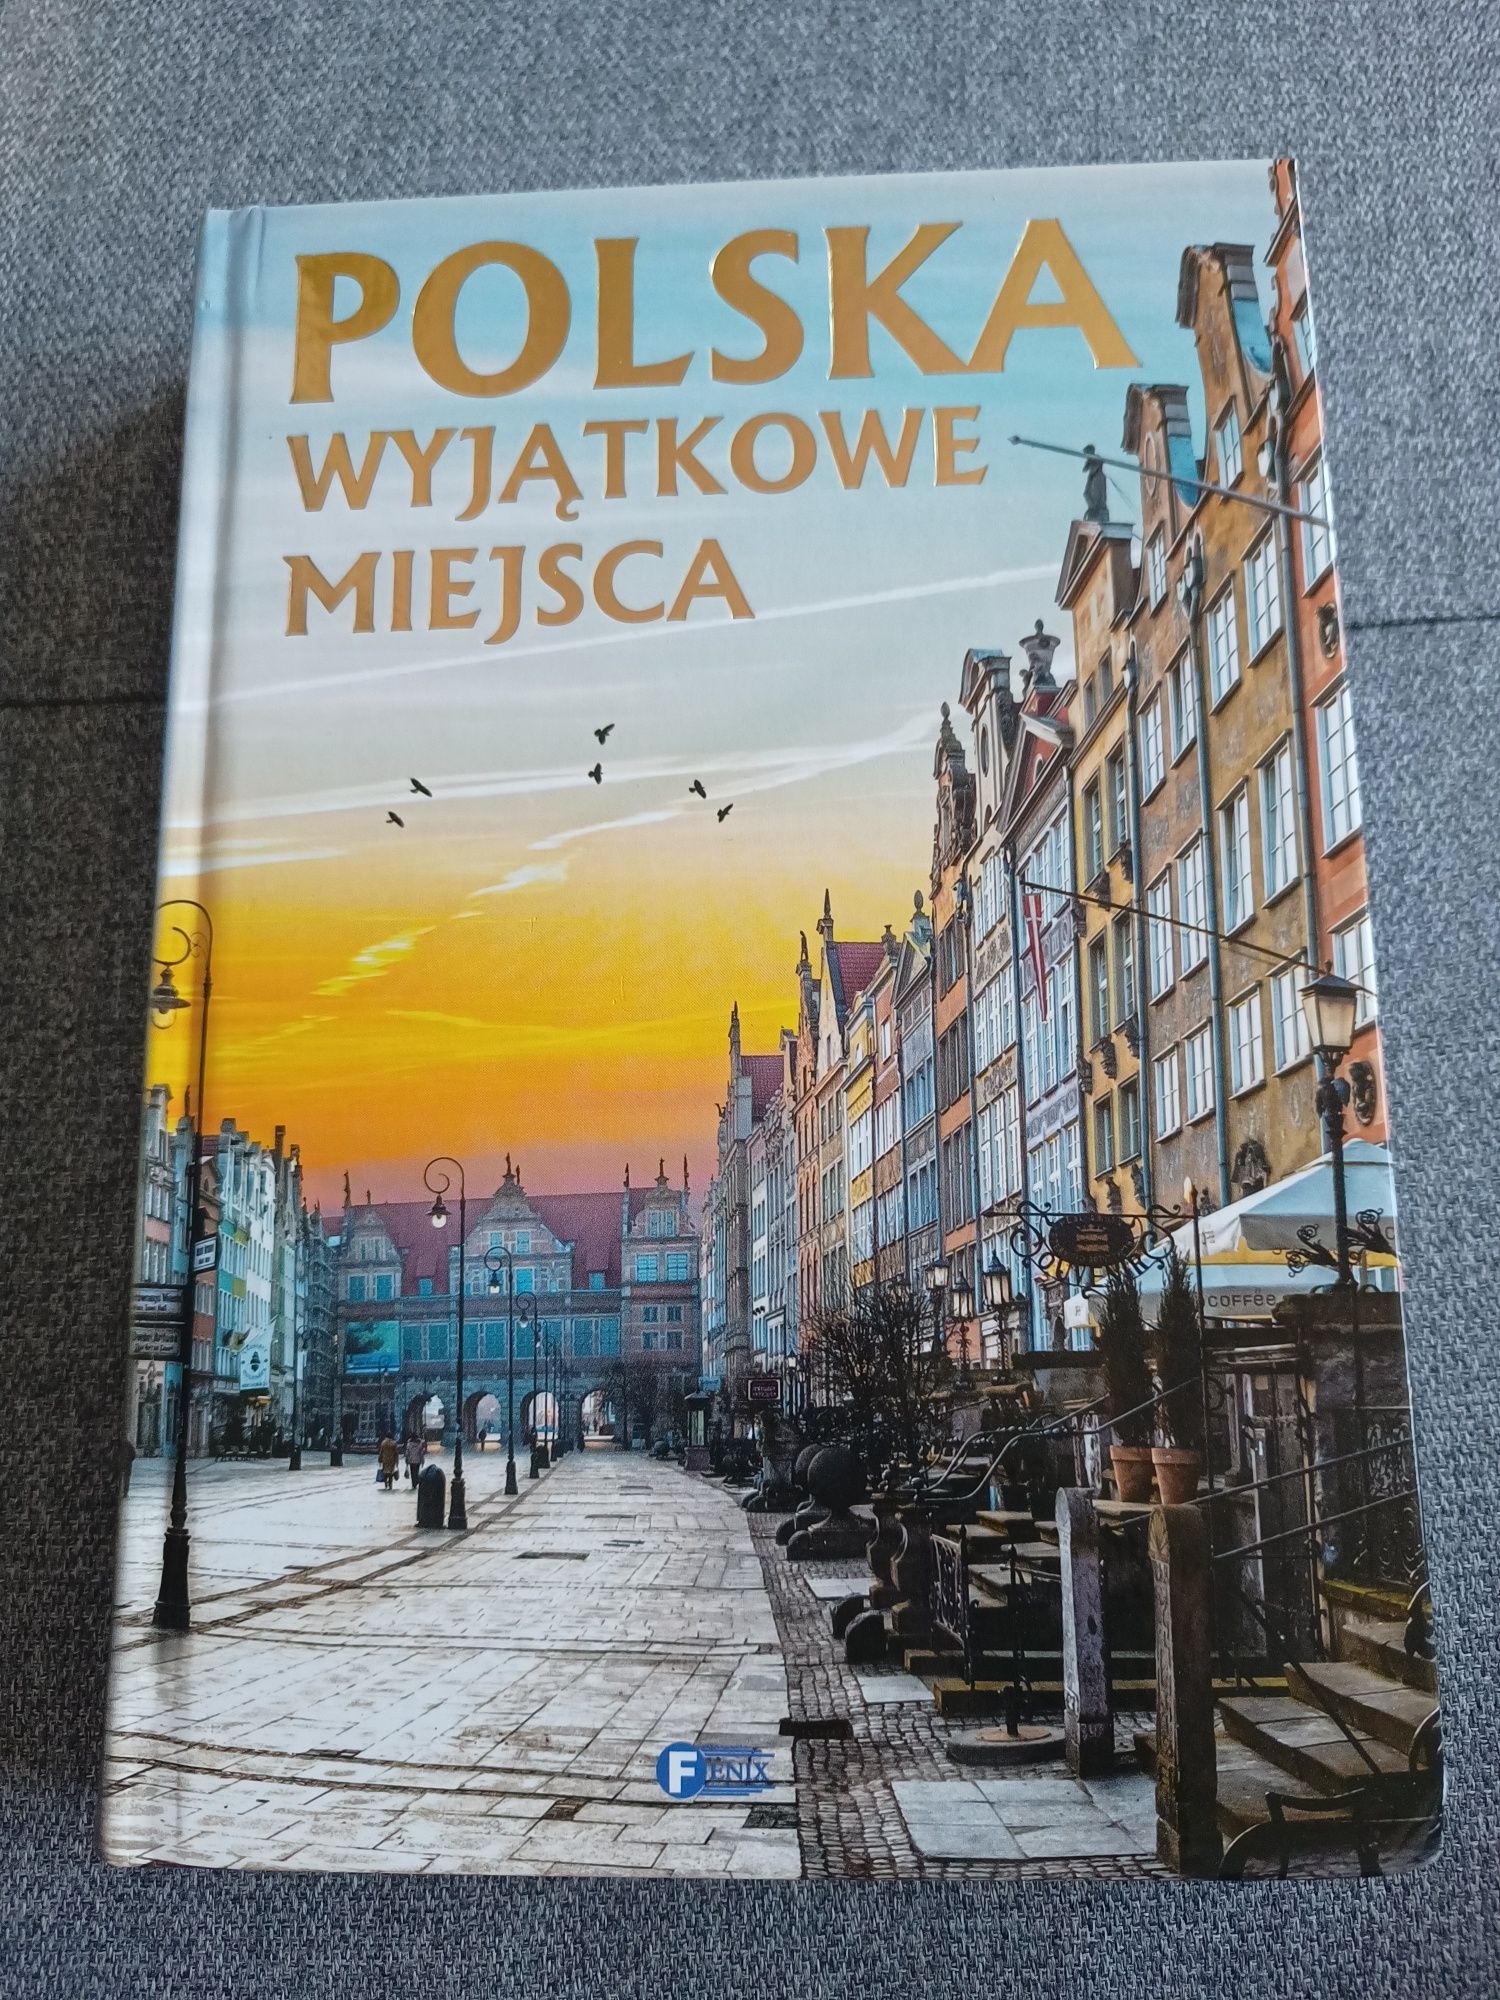 Książka, książki - Polska Wyjątkowe miejsca"